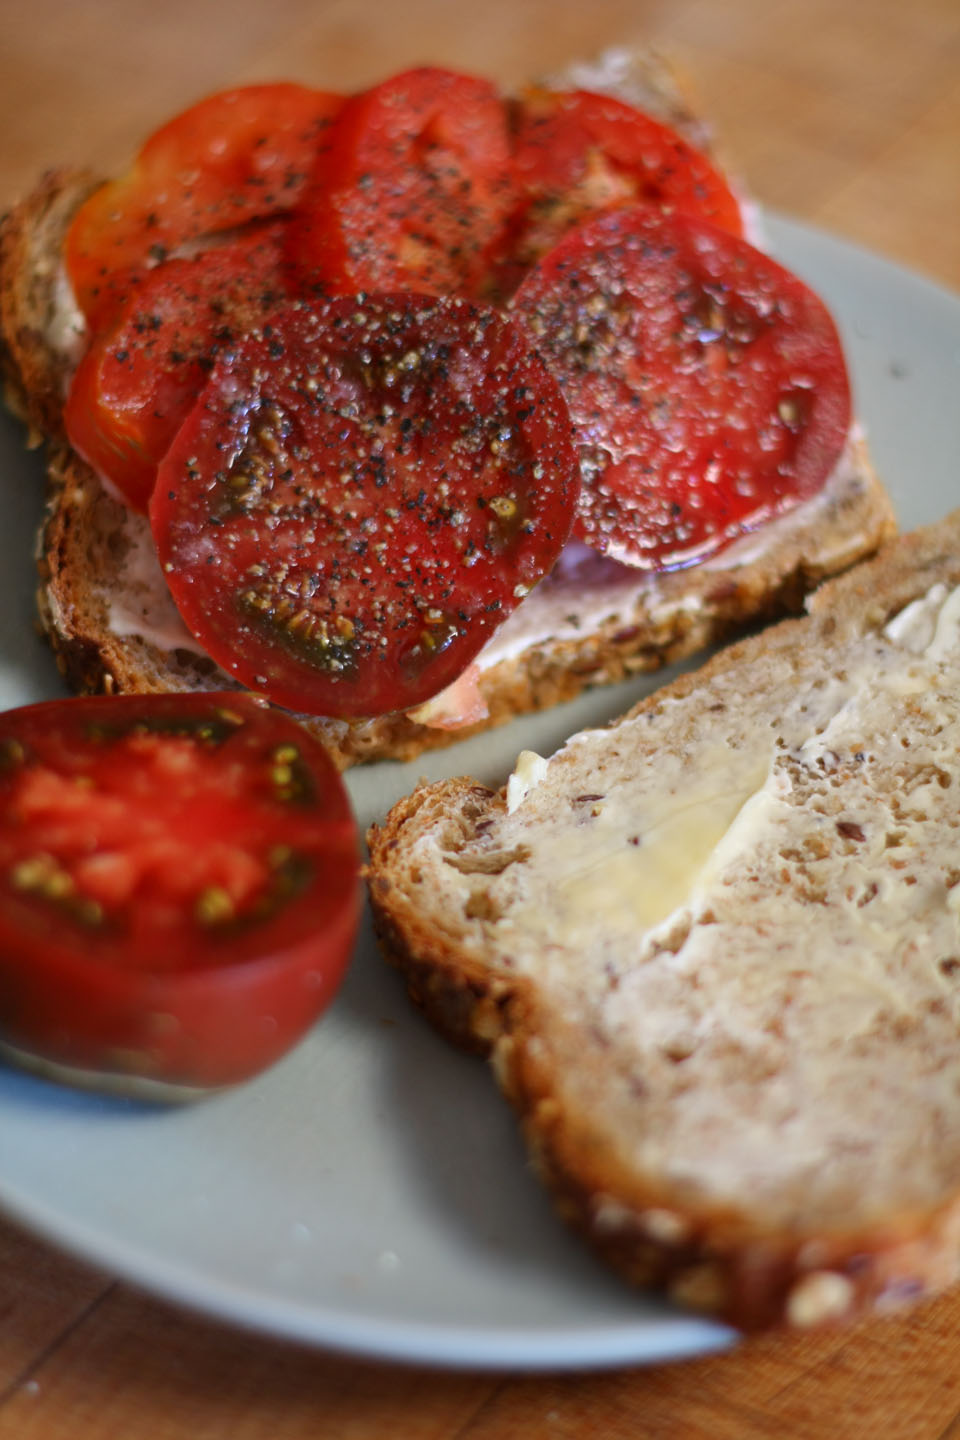 66 Square Feet (Plus): Tomato sandwich